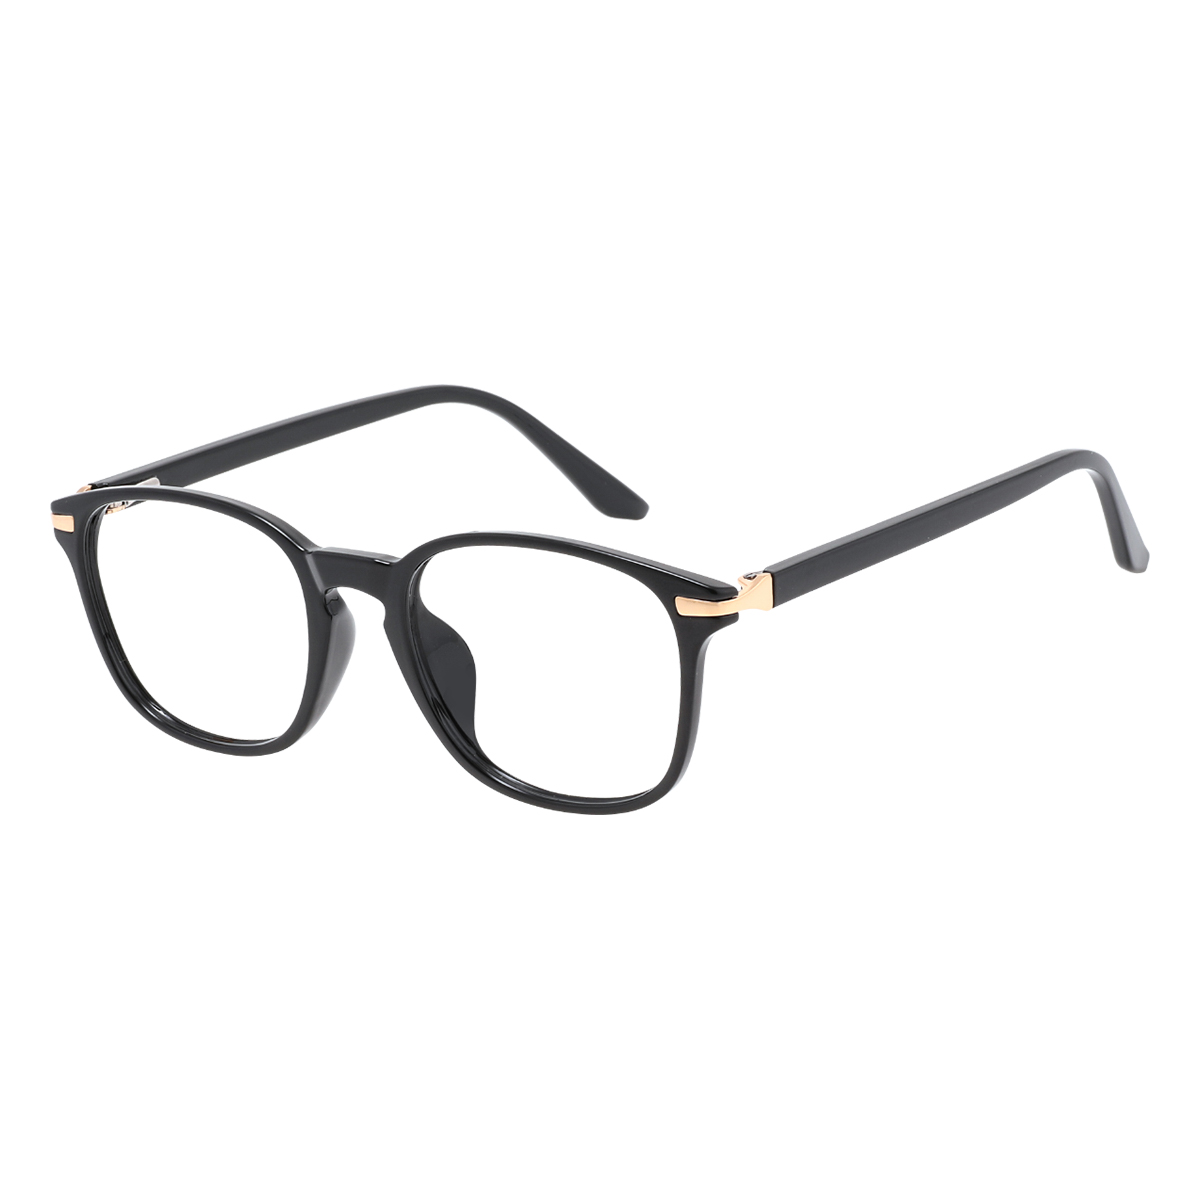 Gorgo - Square Black Reading Glasses for Women